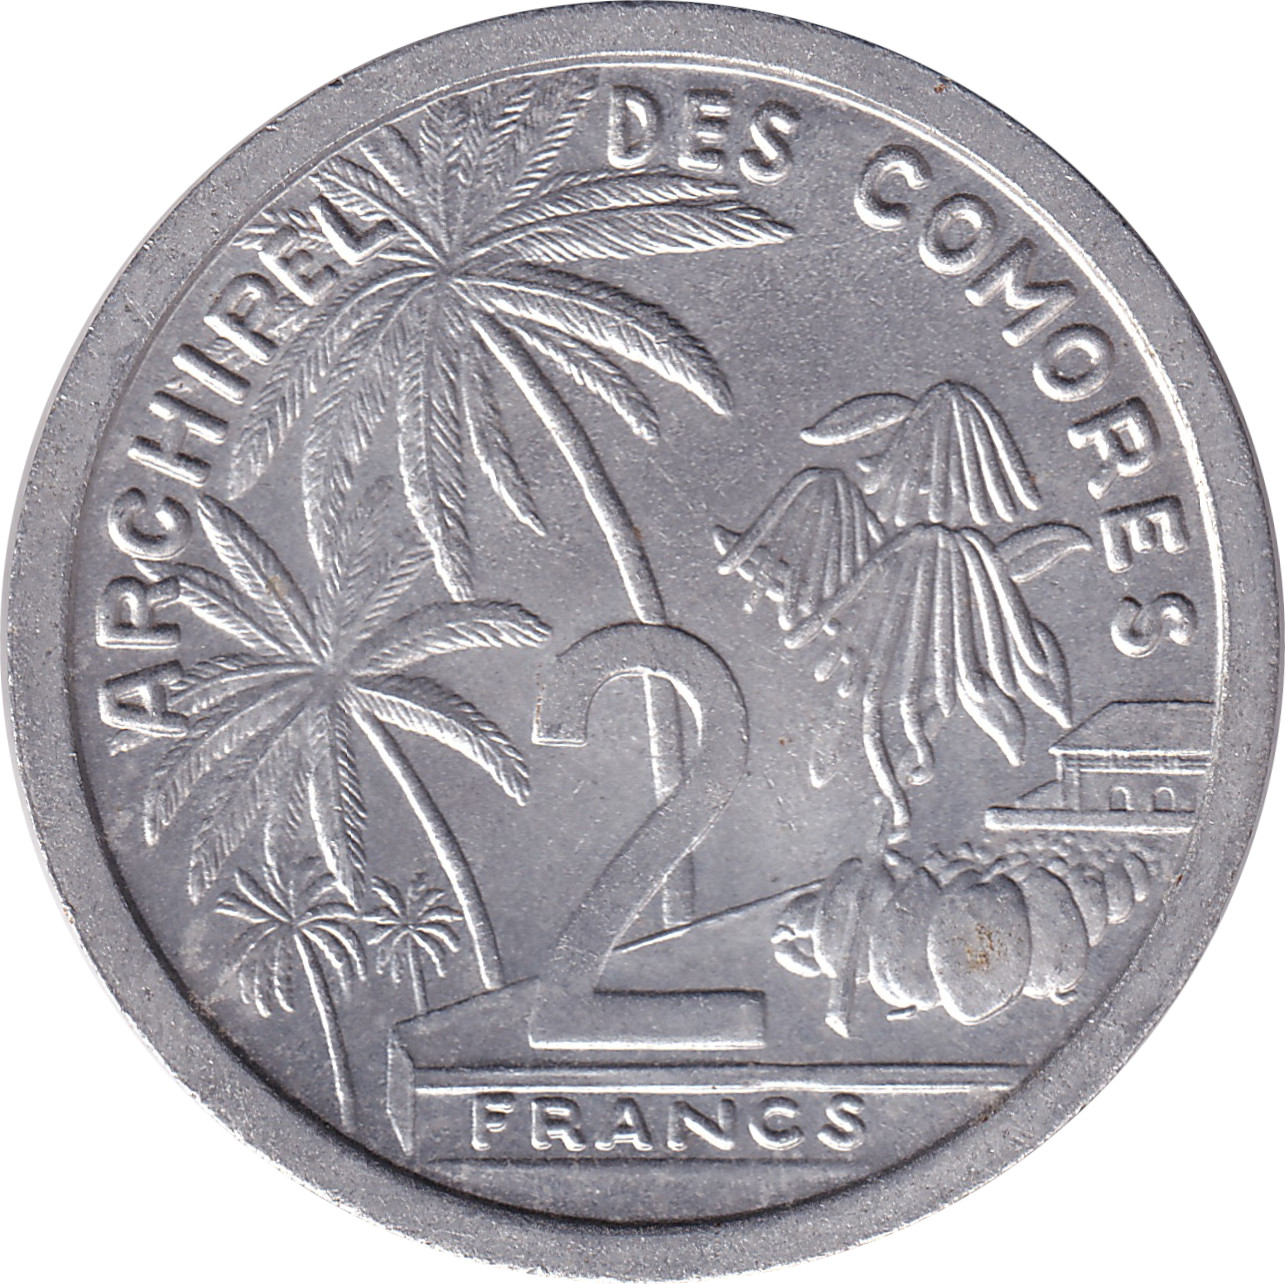 2 francs - Archipel des Comores